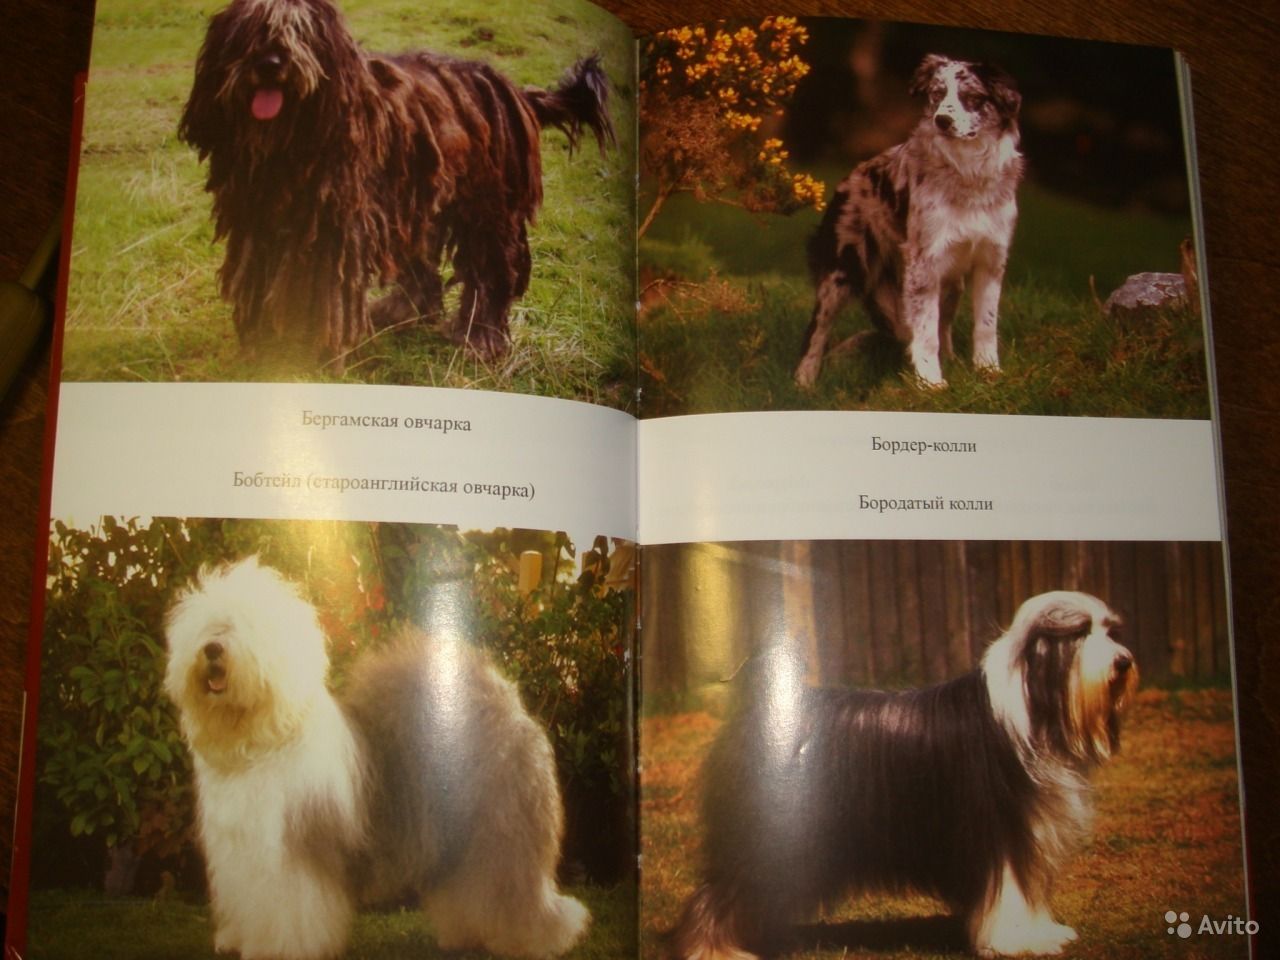 Бишон лион: описание породы, характеристика собаки, плюсы и минусы, фото щенков и взрослой собаки